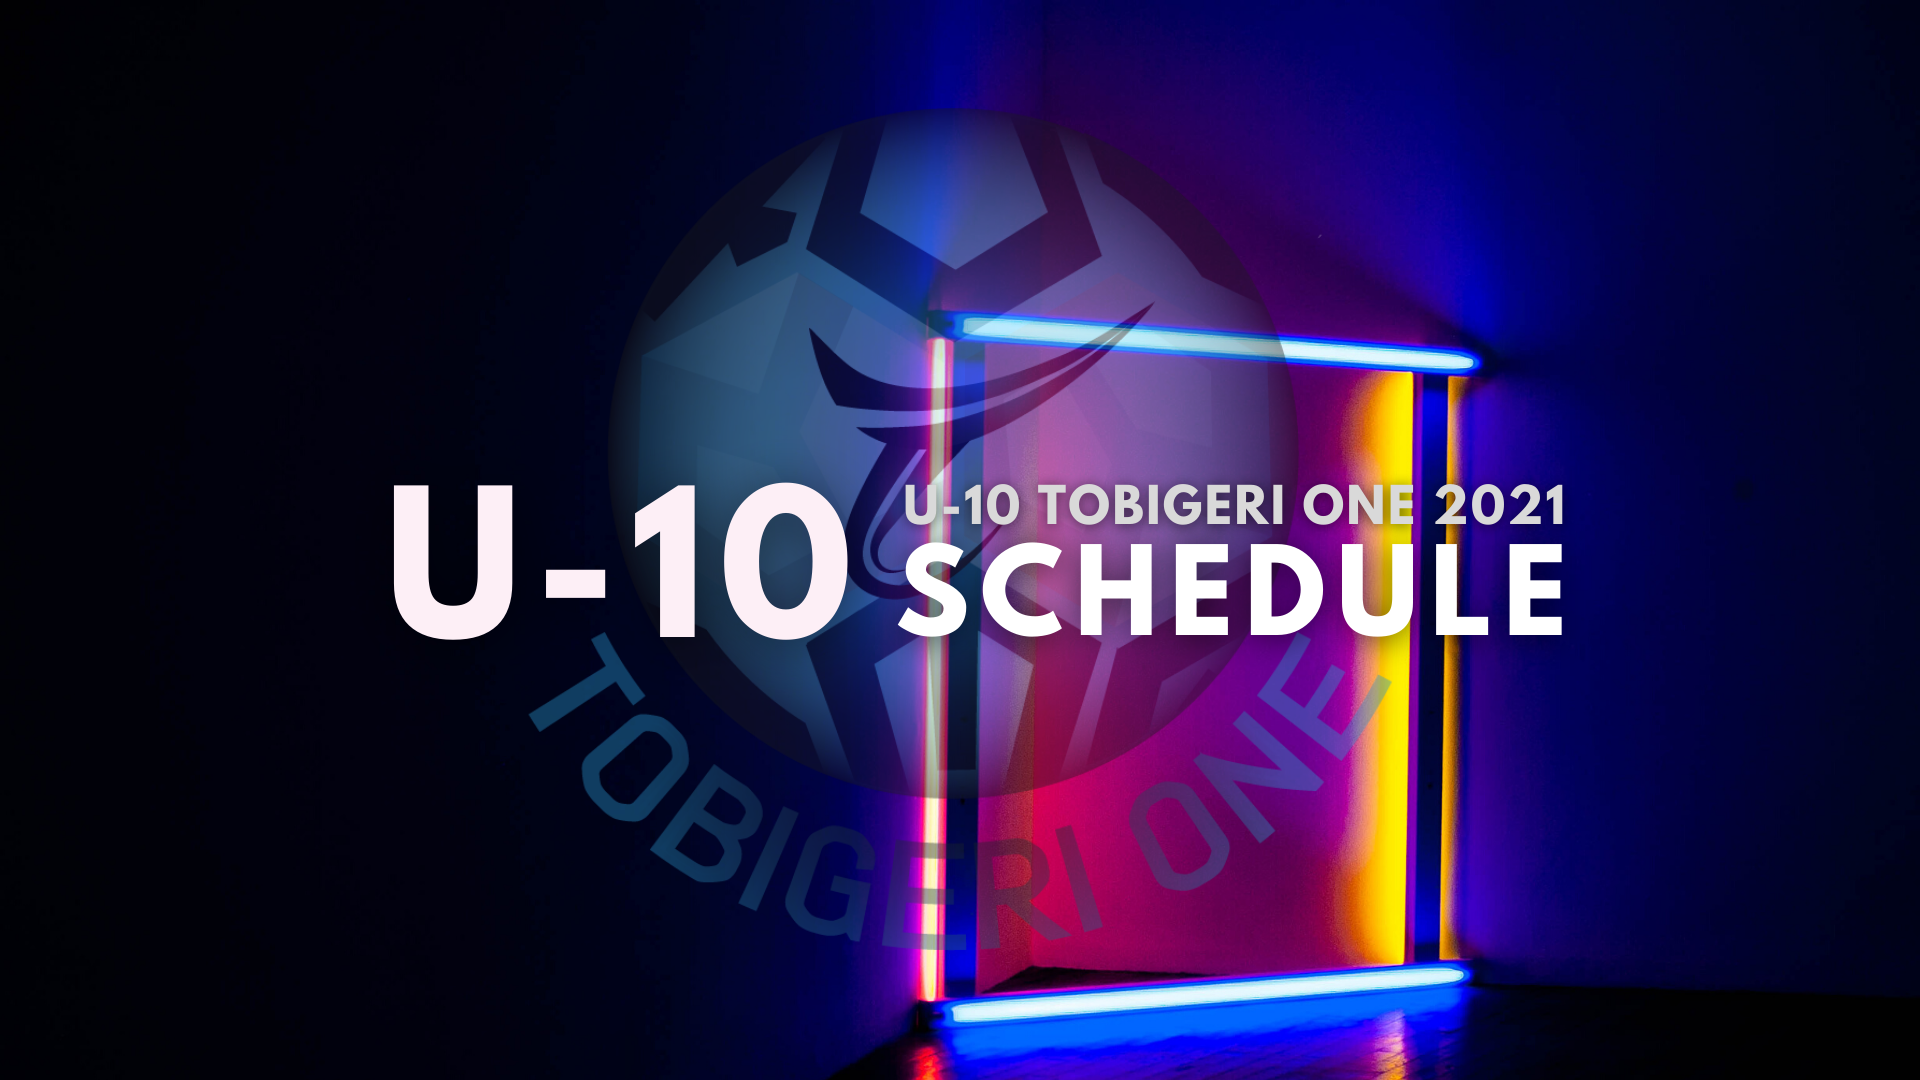 【U-10】TOBIGERI ONE 2021 組合せスケジュールリリース✨